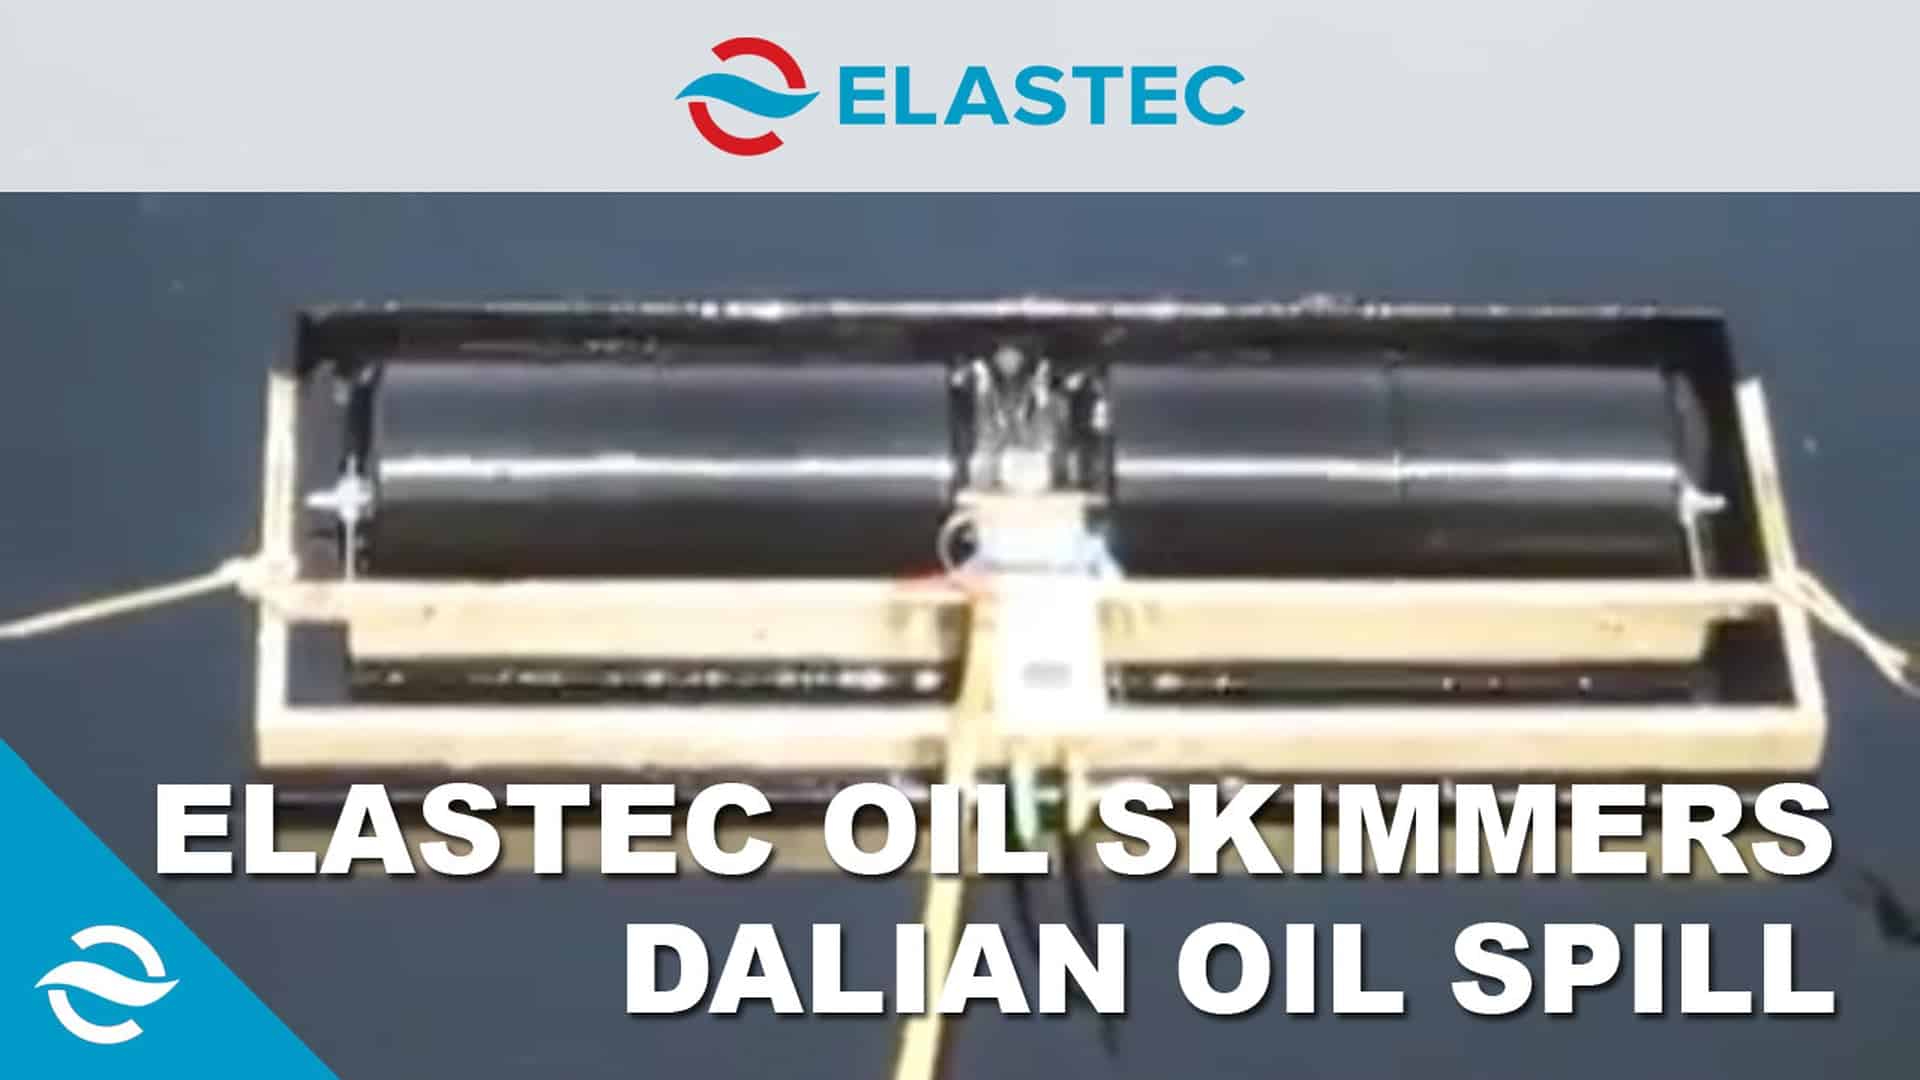 Elastec Oil Skimmers at Dalian Oil Spill